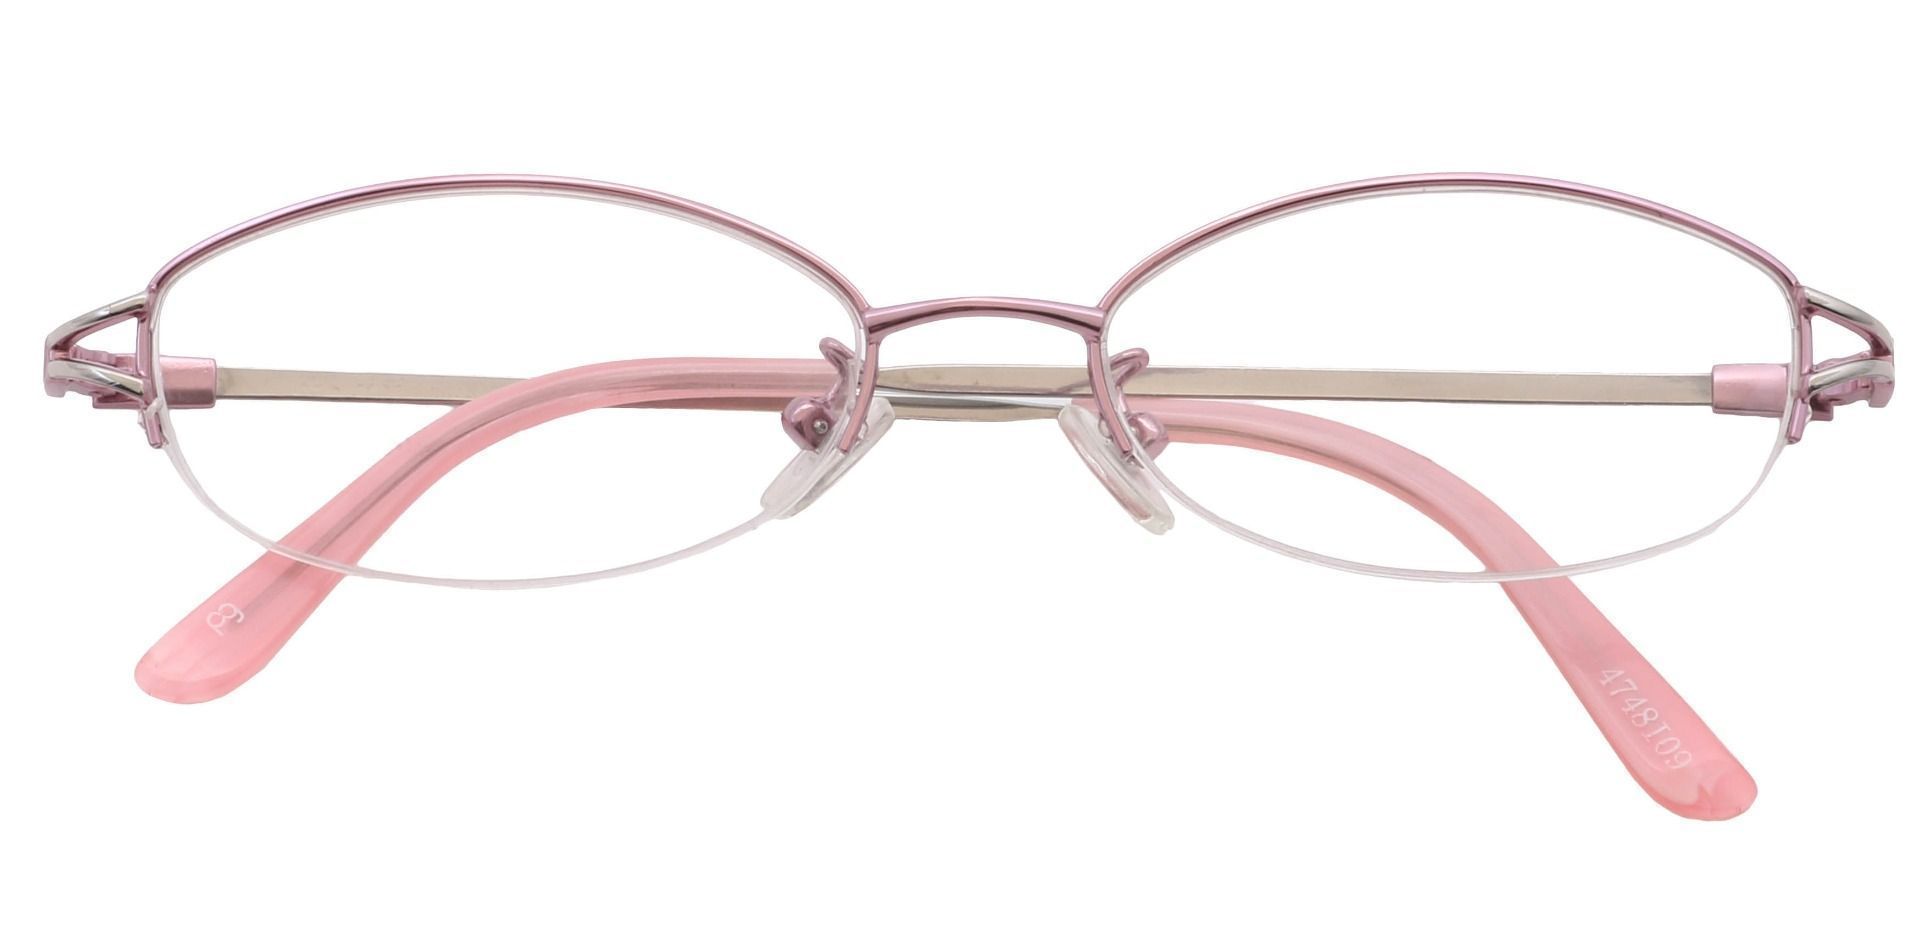 Corsica Oval Eyeglasses Frame - Pink